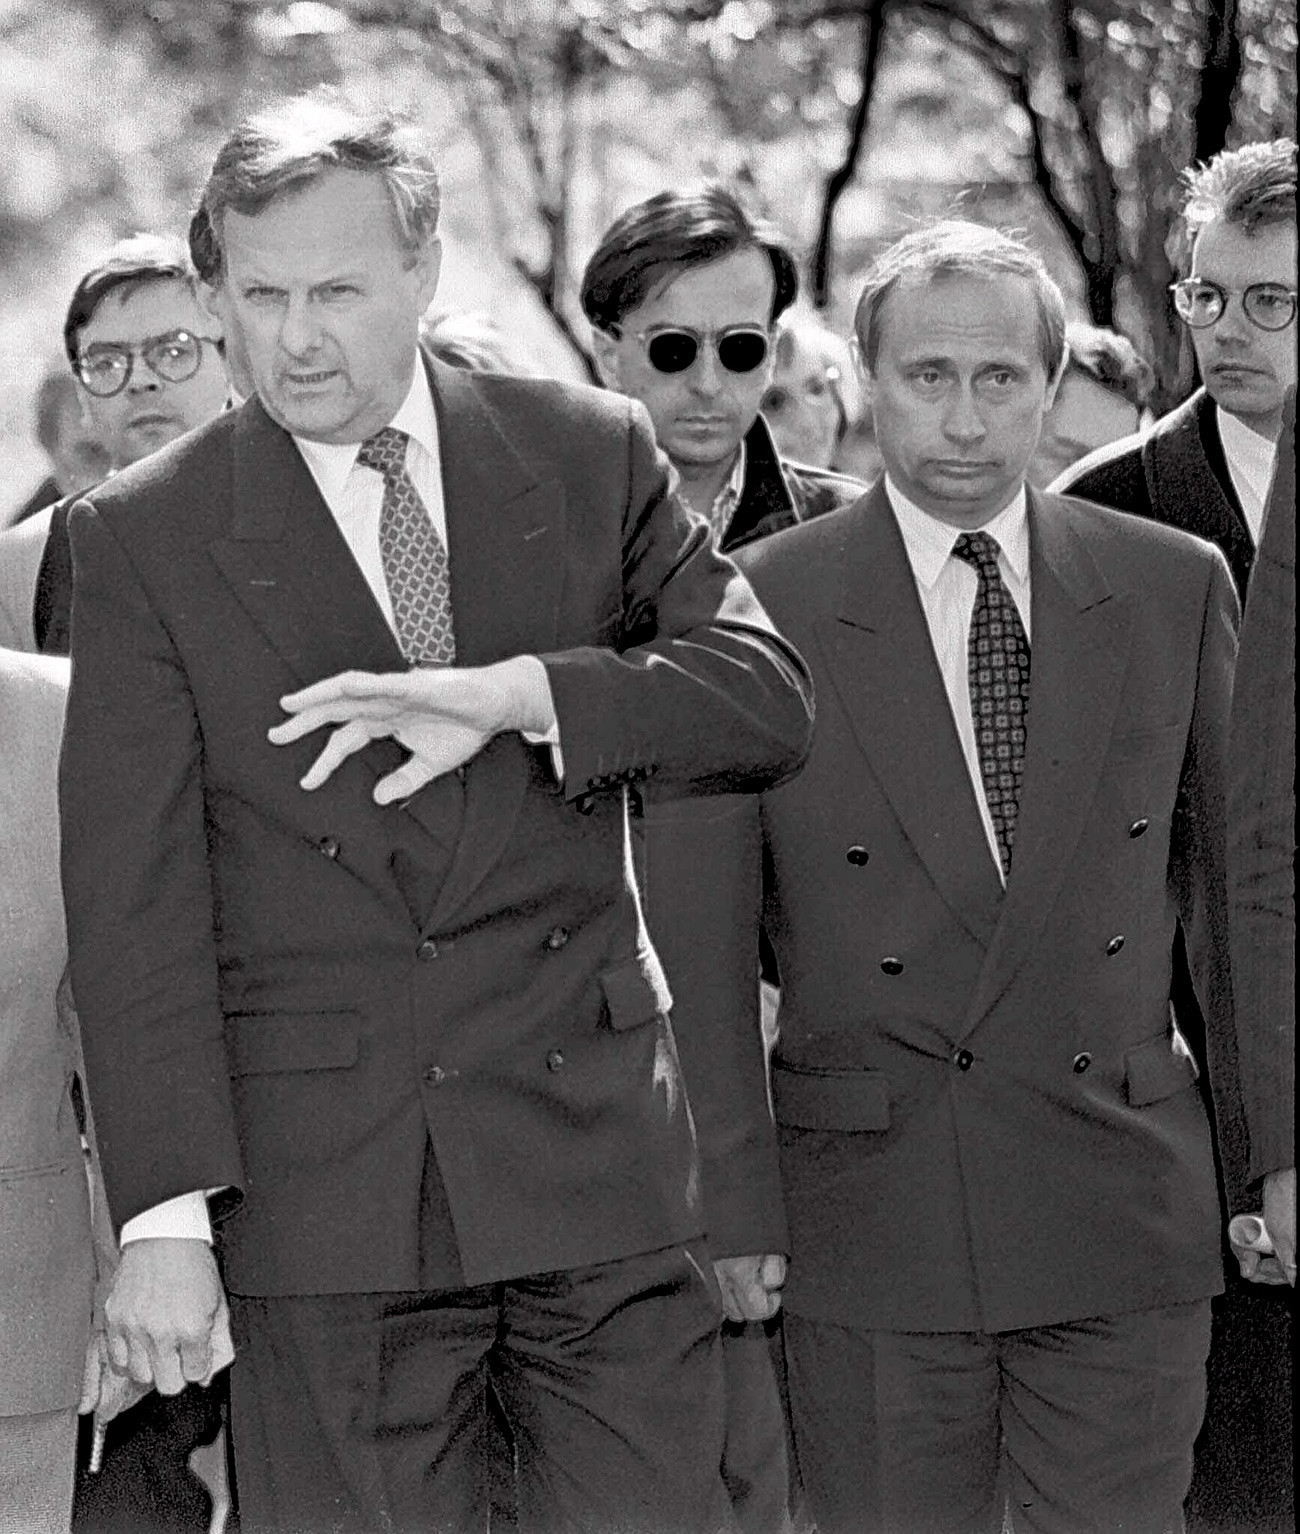 Anatóli Sobtchak, então prefeito de São Petersburgo, ao lado de Putin, que era seu vice, em 1994